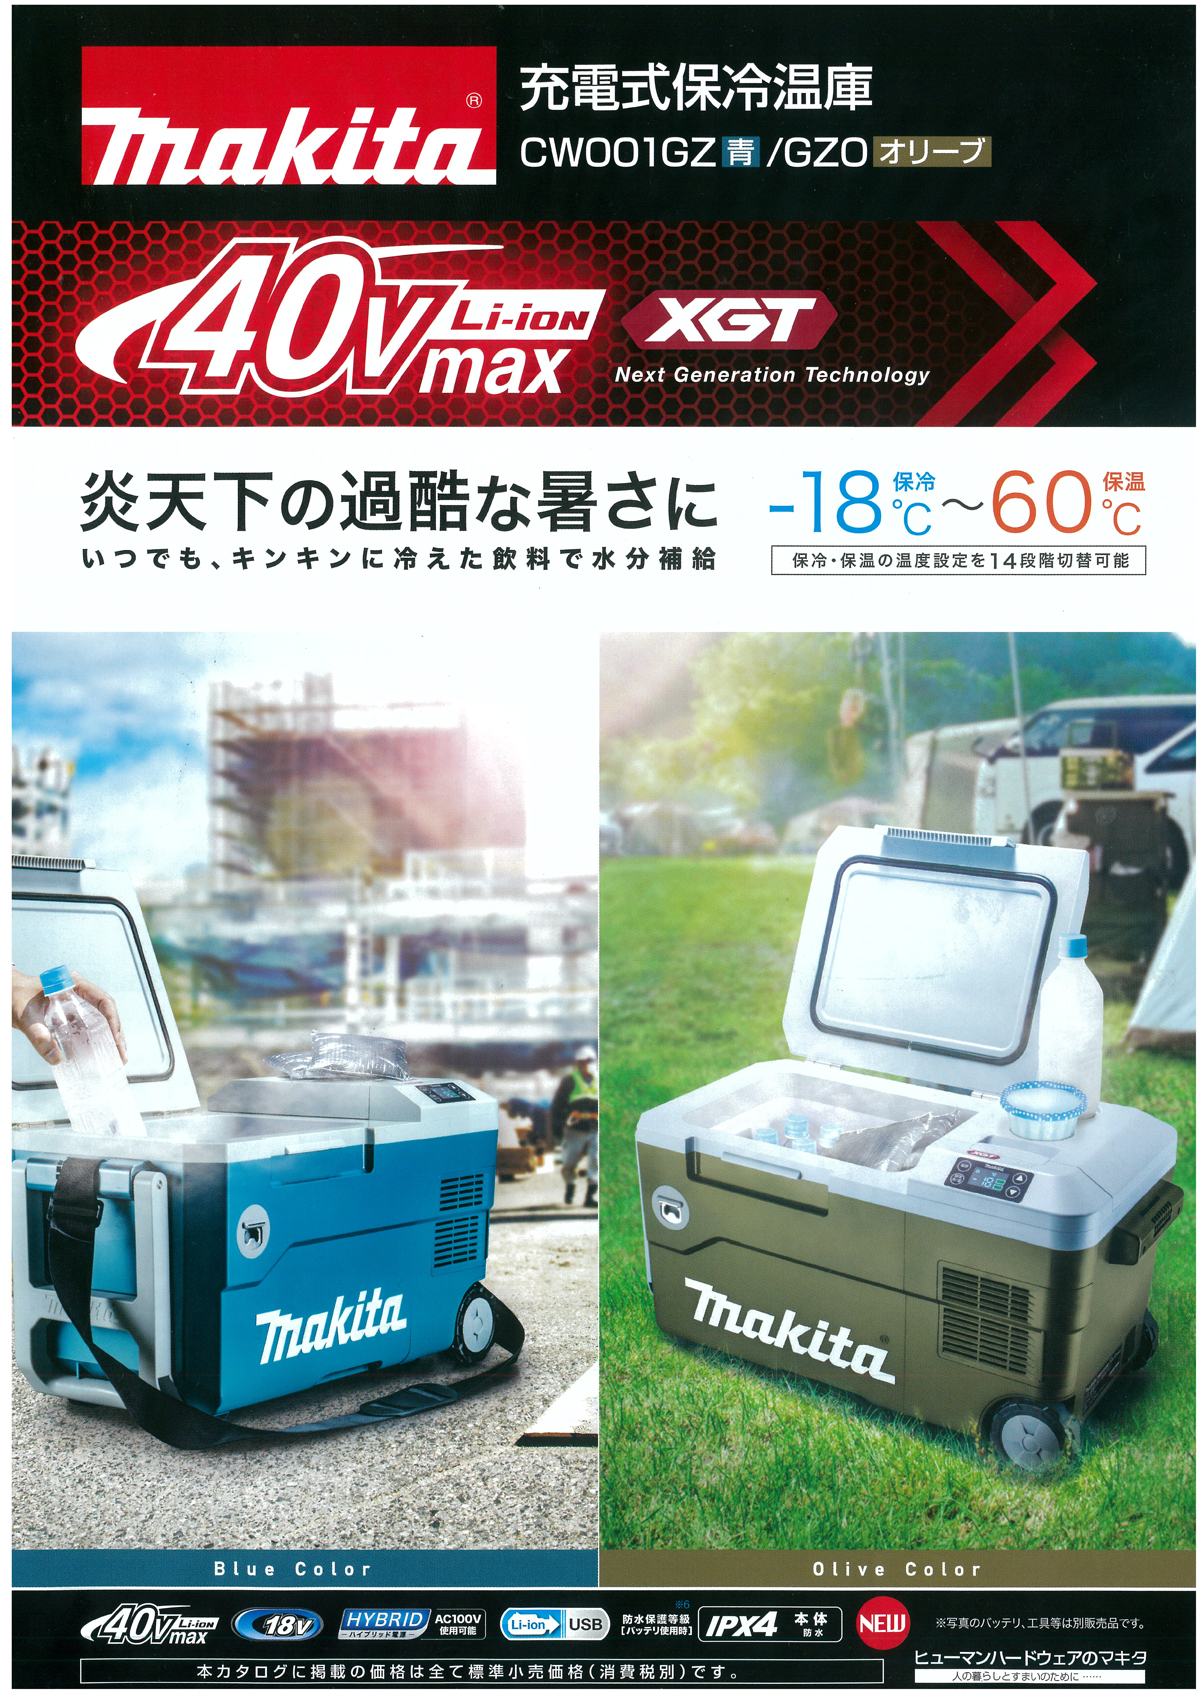 マキタ CW001GZO 40Vmax充電式保冷温庫を【徹底解説】/CW001GZ